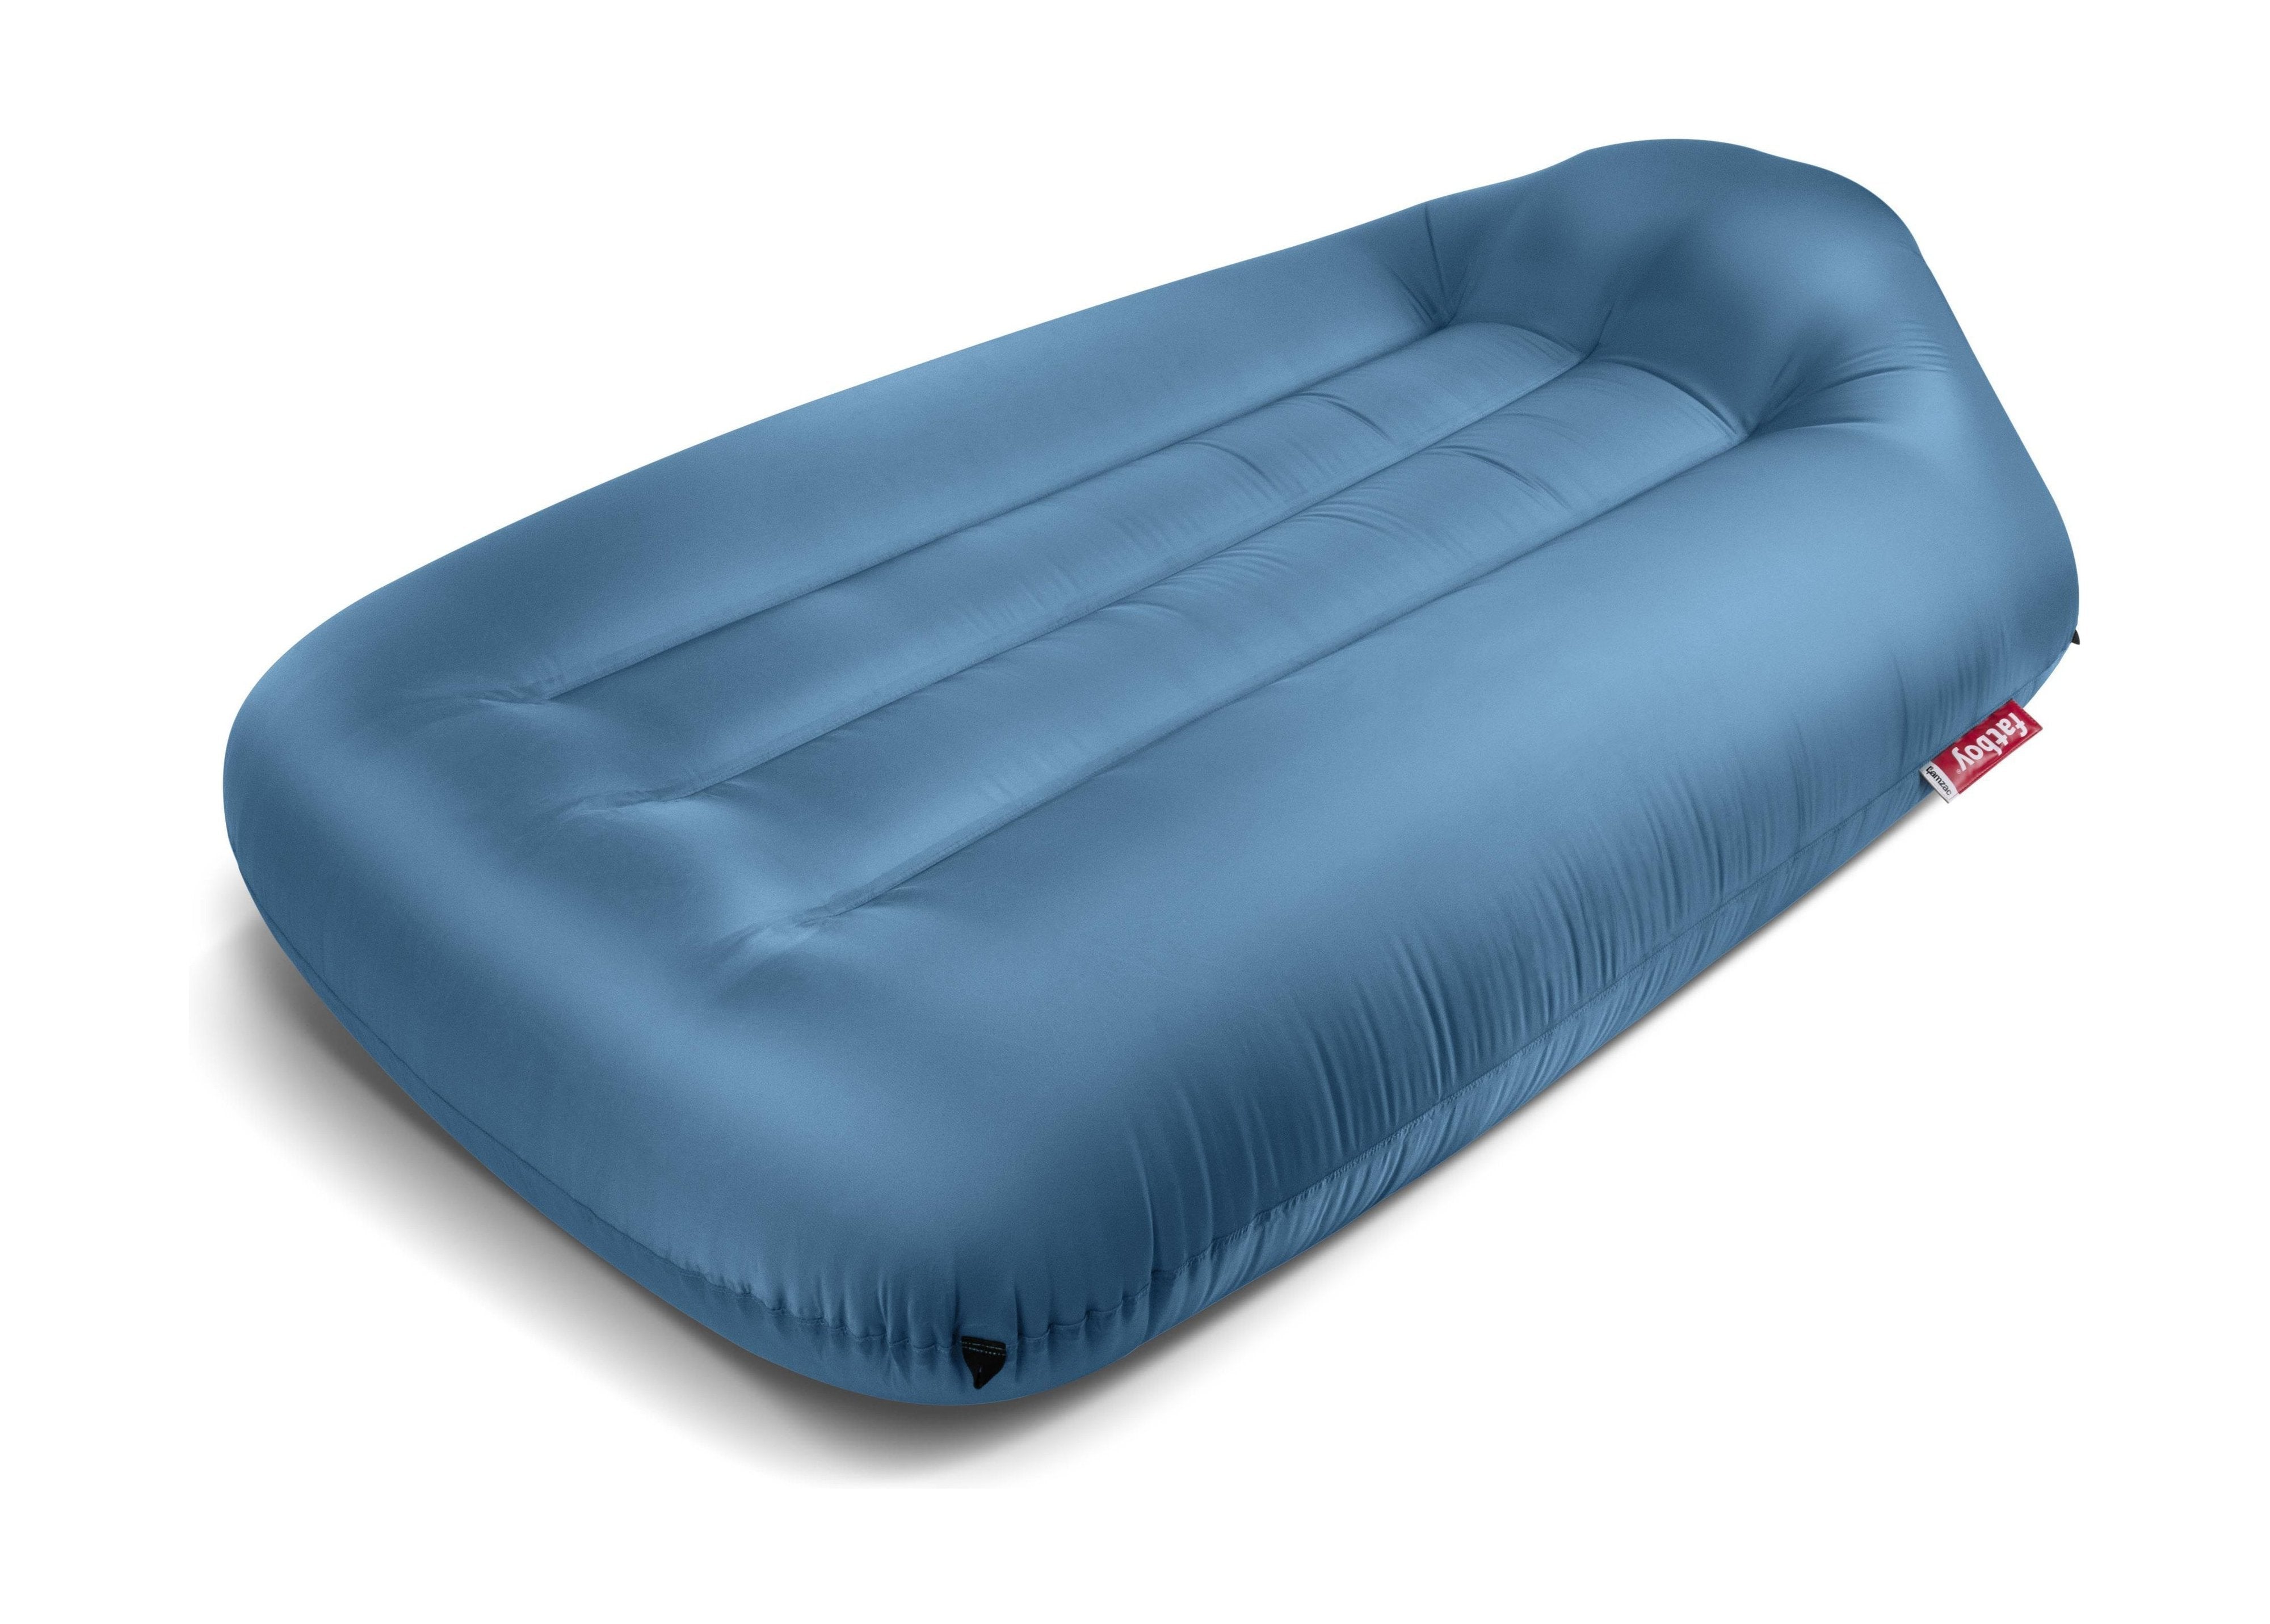 Fatboy Lamzac L divano aria gonfiabile 3.0, blu cielo